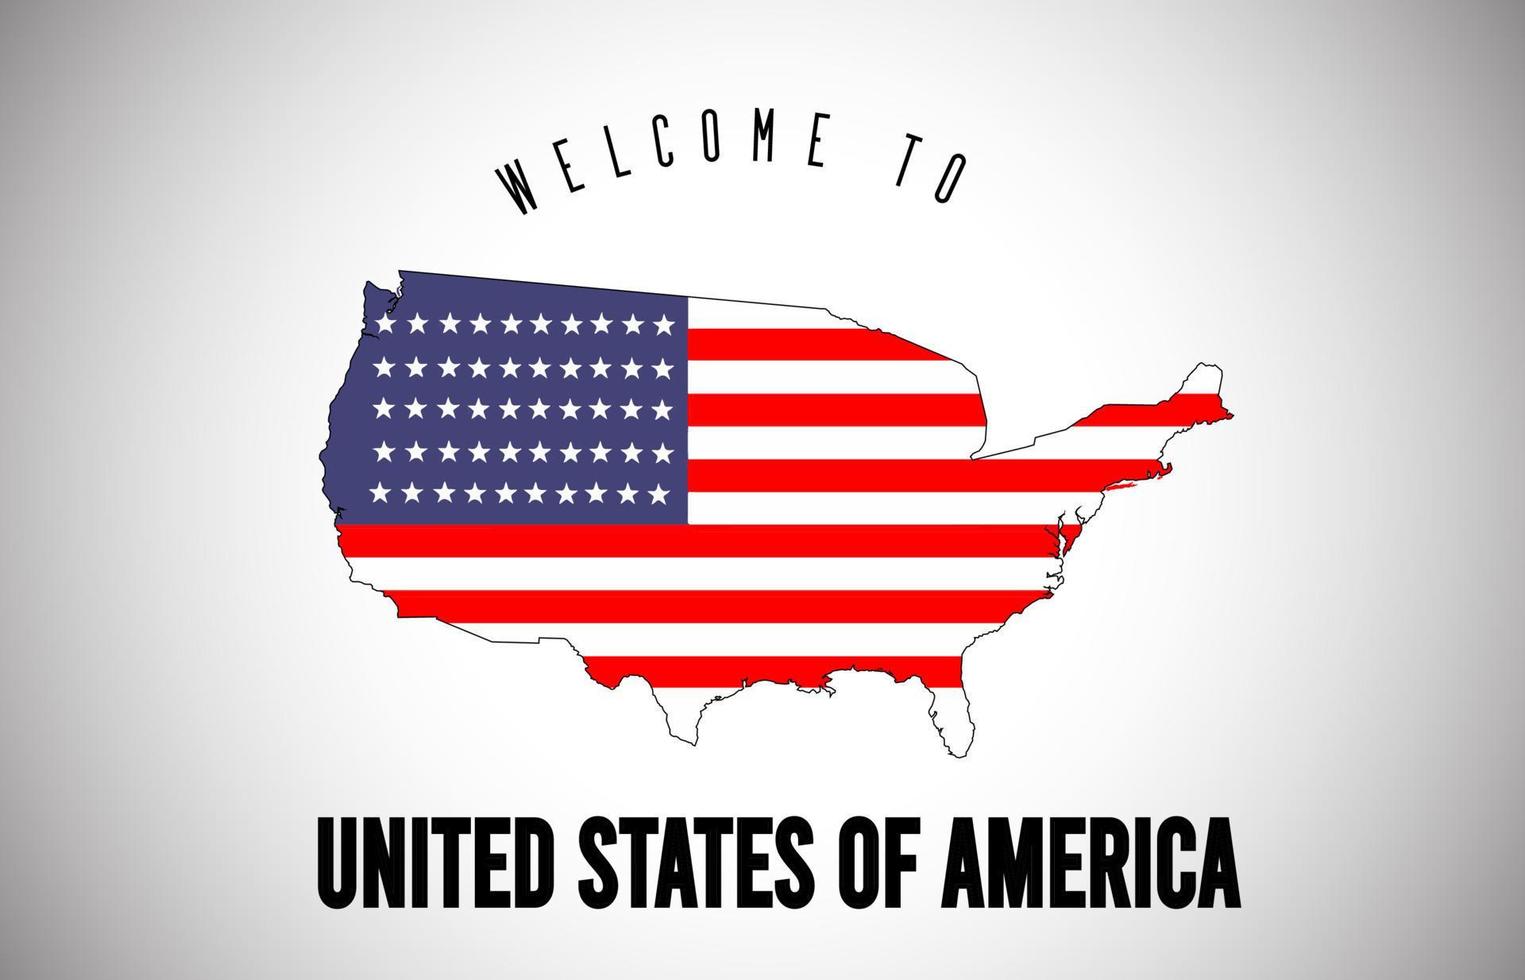 Stati Uniti d'America benvenuti nel testo e nella bandiera del paese all'interno del disegno vettoriale della mappa del confine del paese.